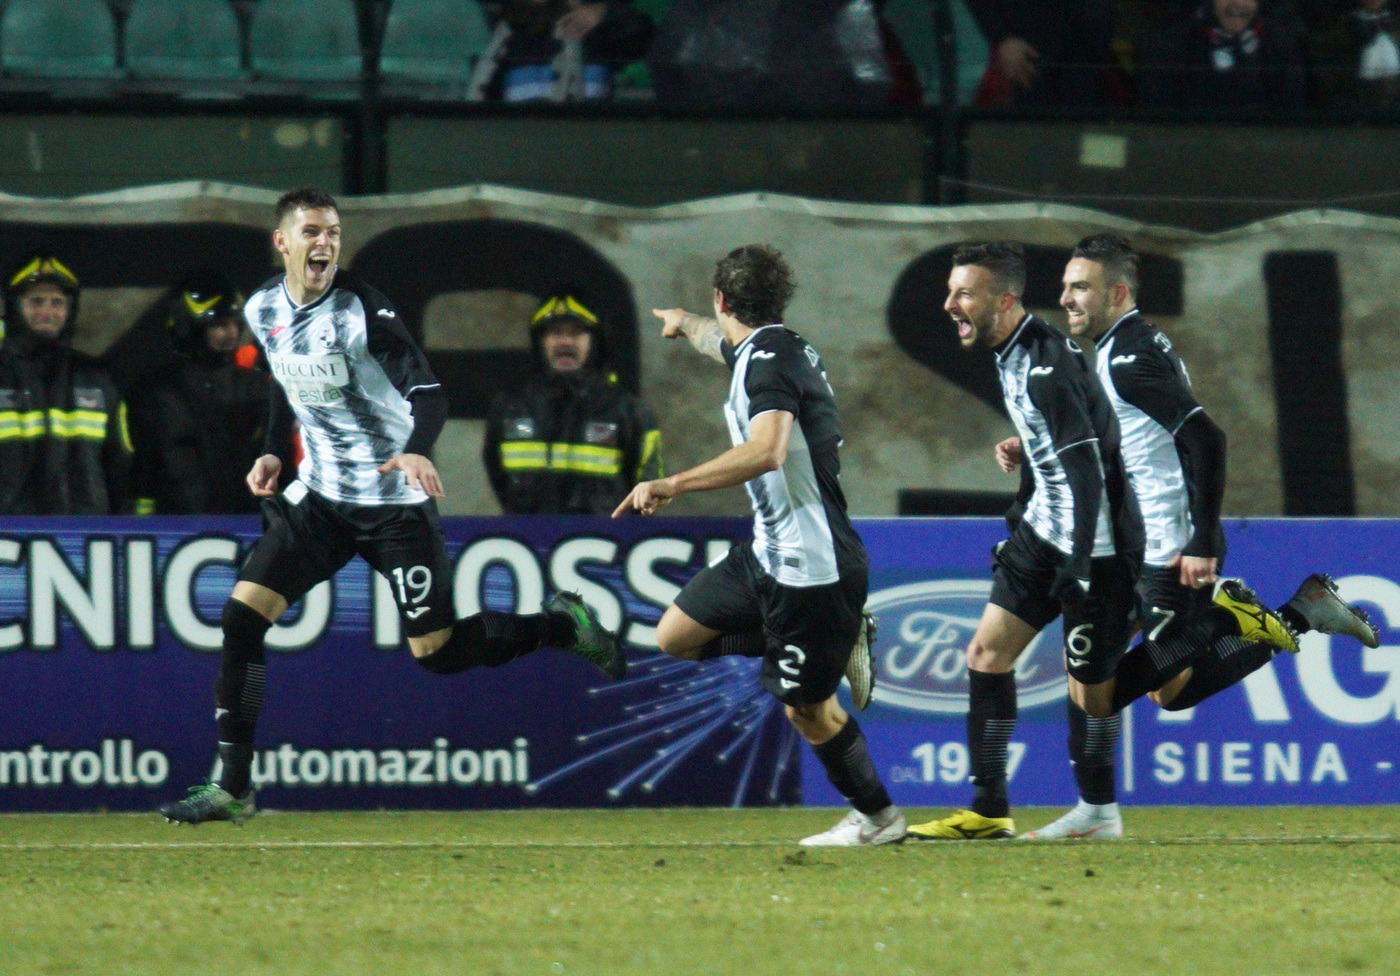 Siena-Gozzano 2 marzo: match valido per il gruppo A di Serie C. I padroni di casa sono favoriti per la conquista dei 3 punti in palio.